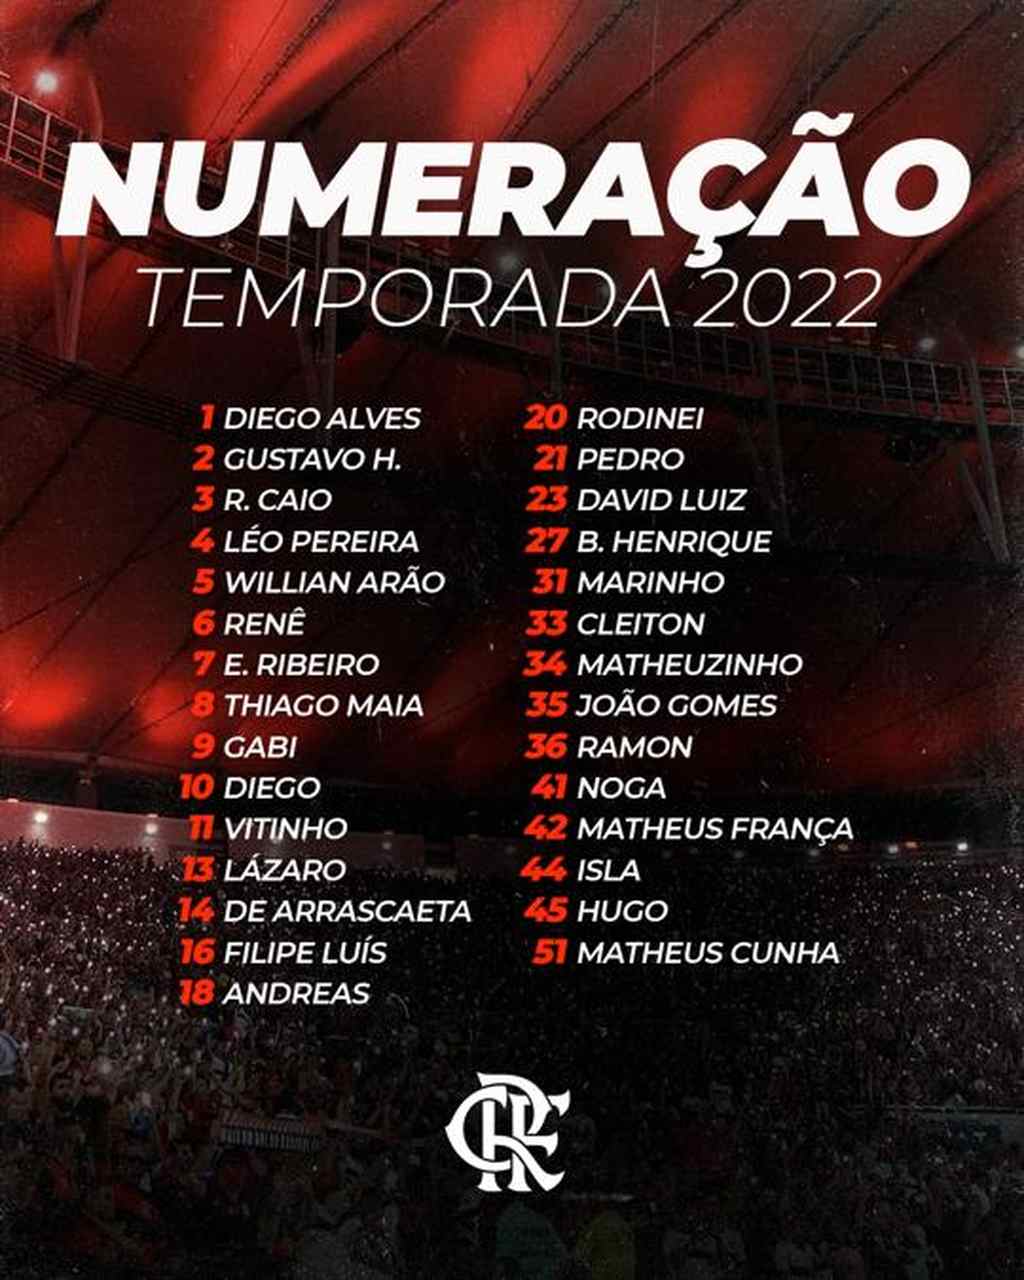 Flamengo - numeração